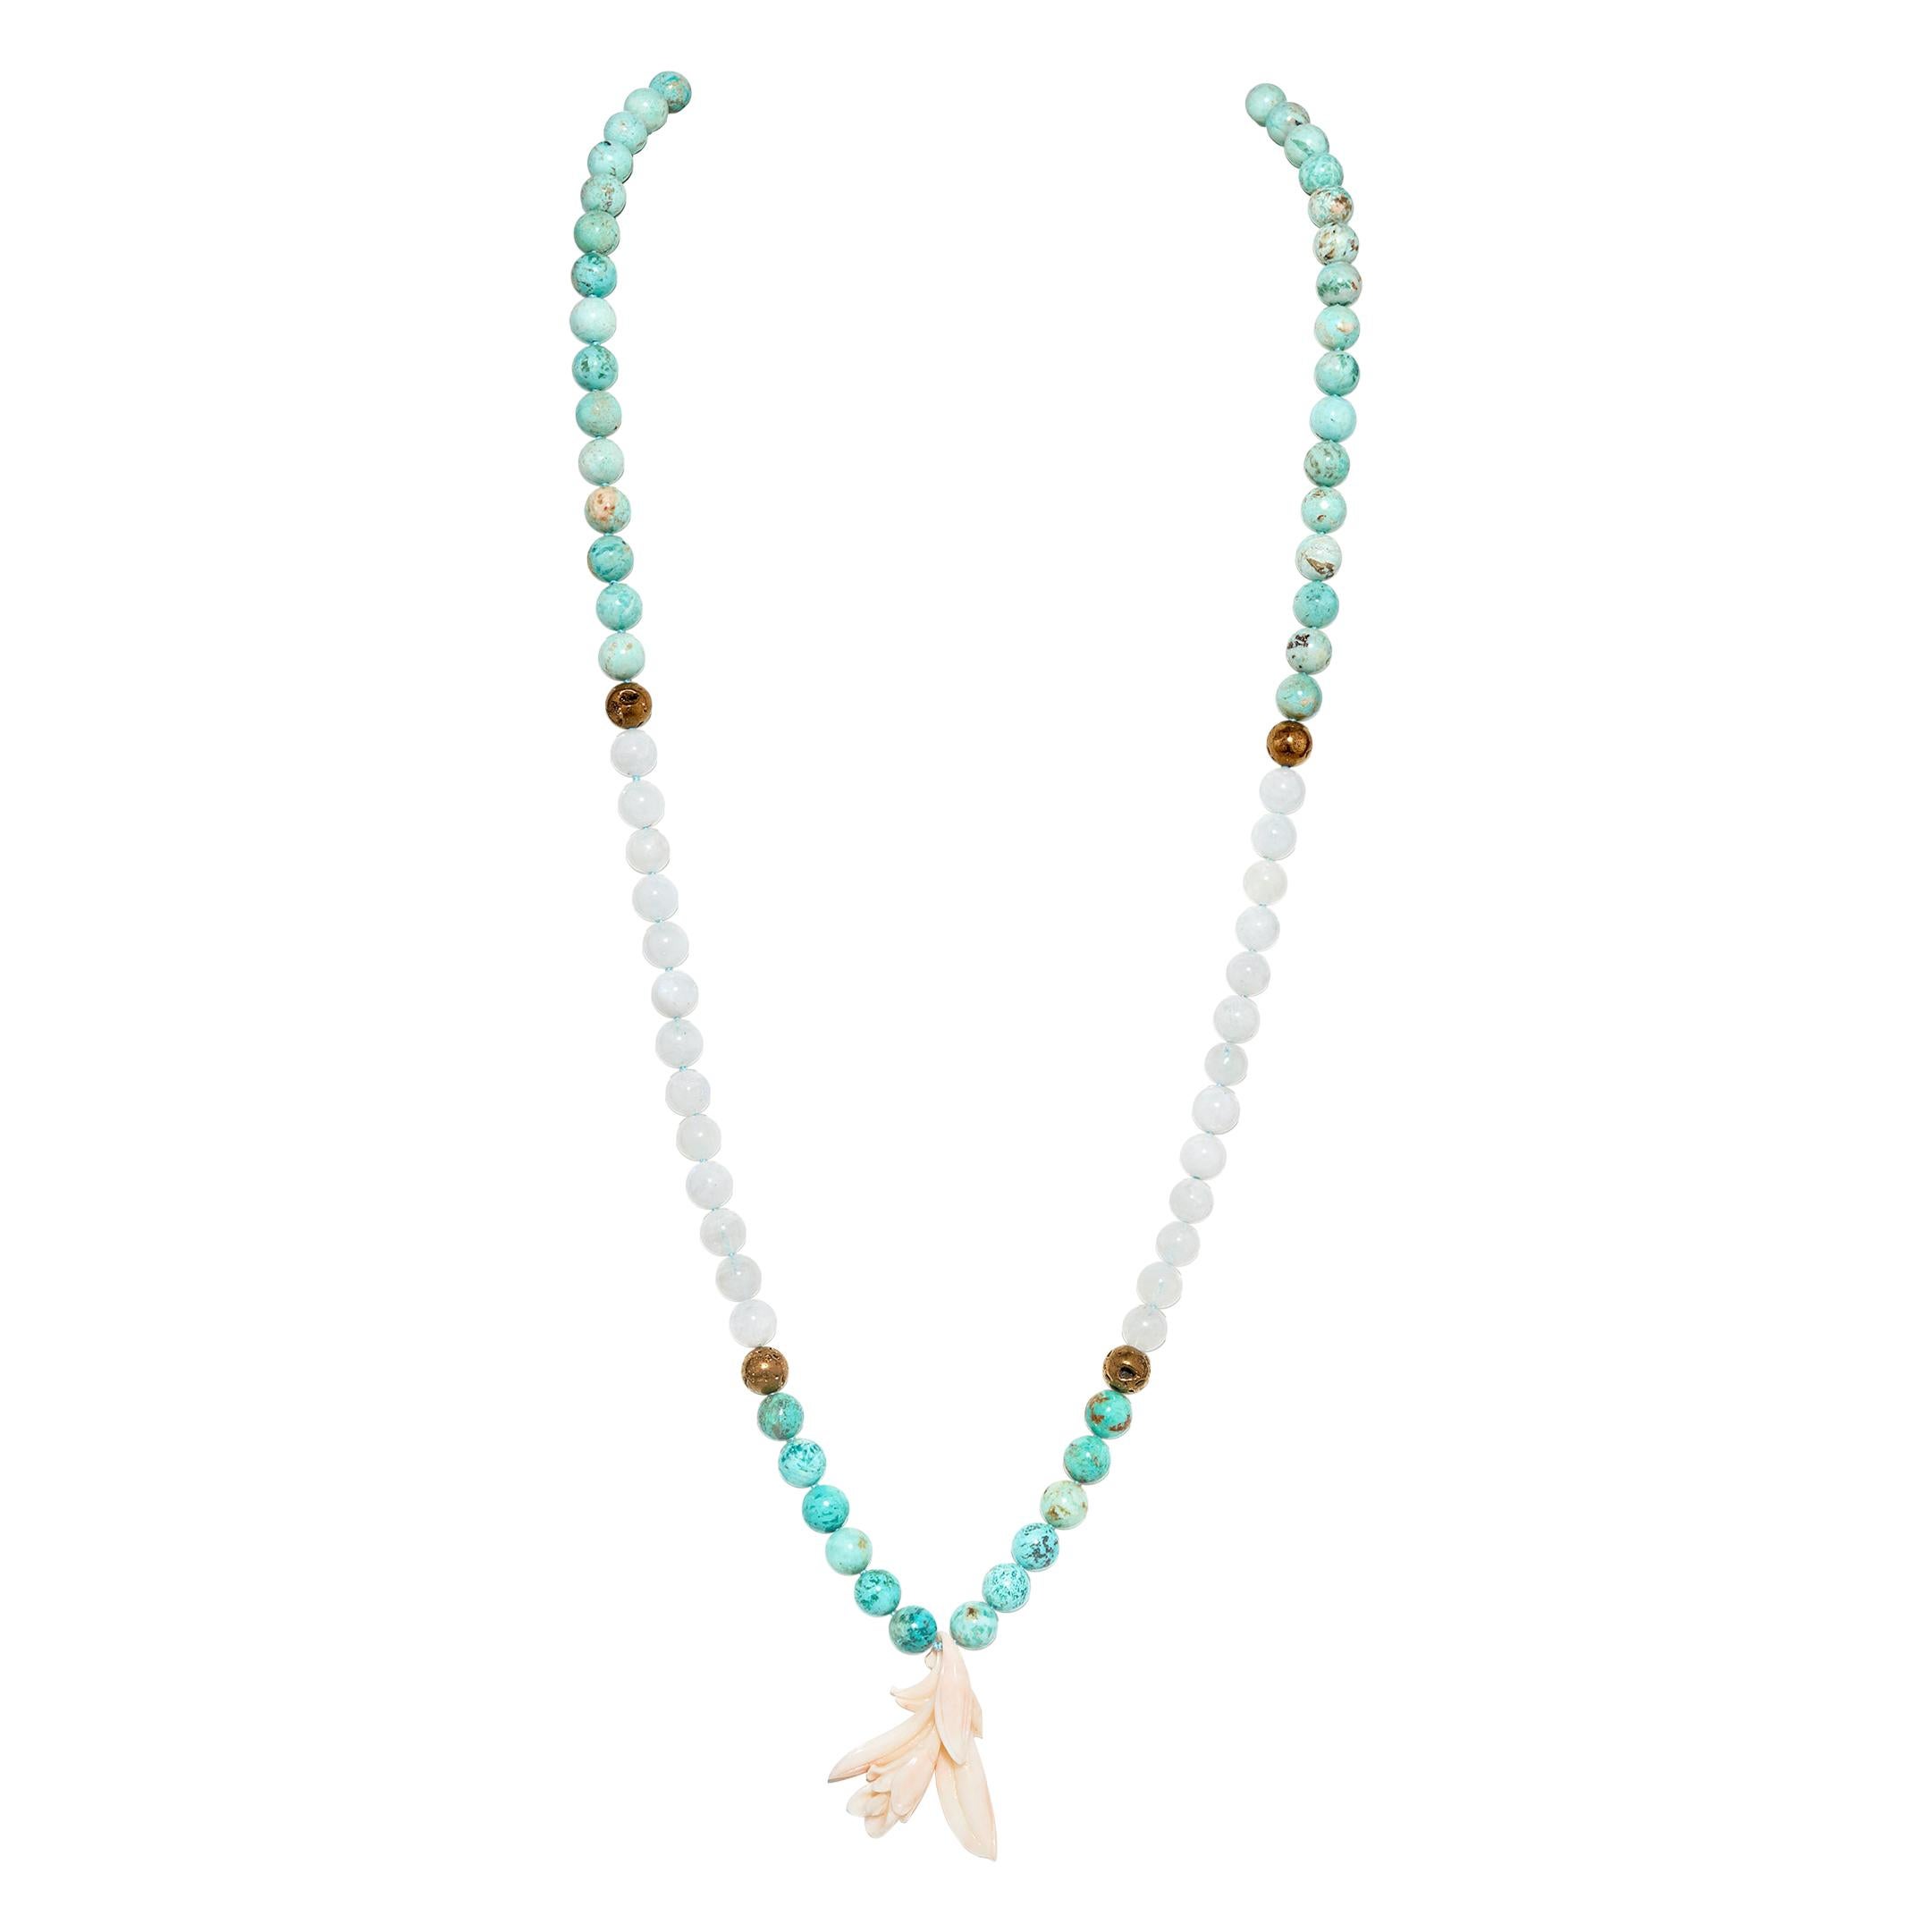 Halskette aus Koralle, Mondstein, Türkis Mala / Meditation / Gebet